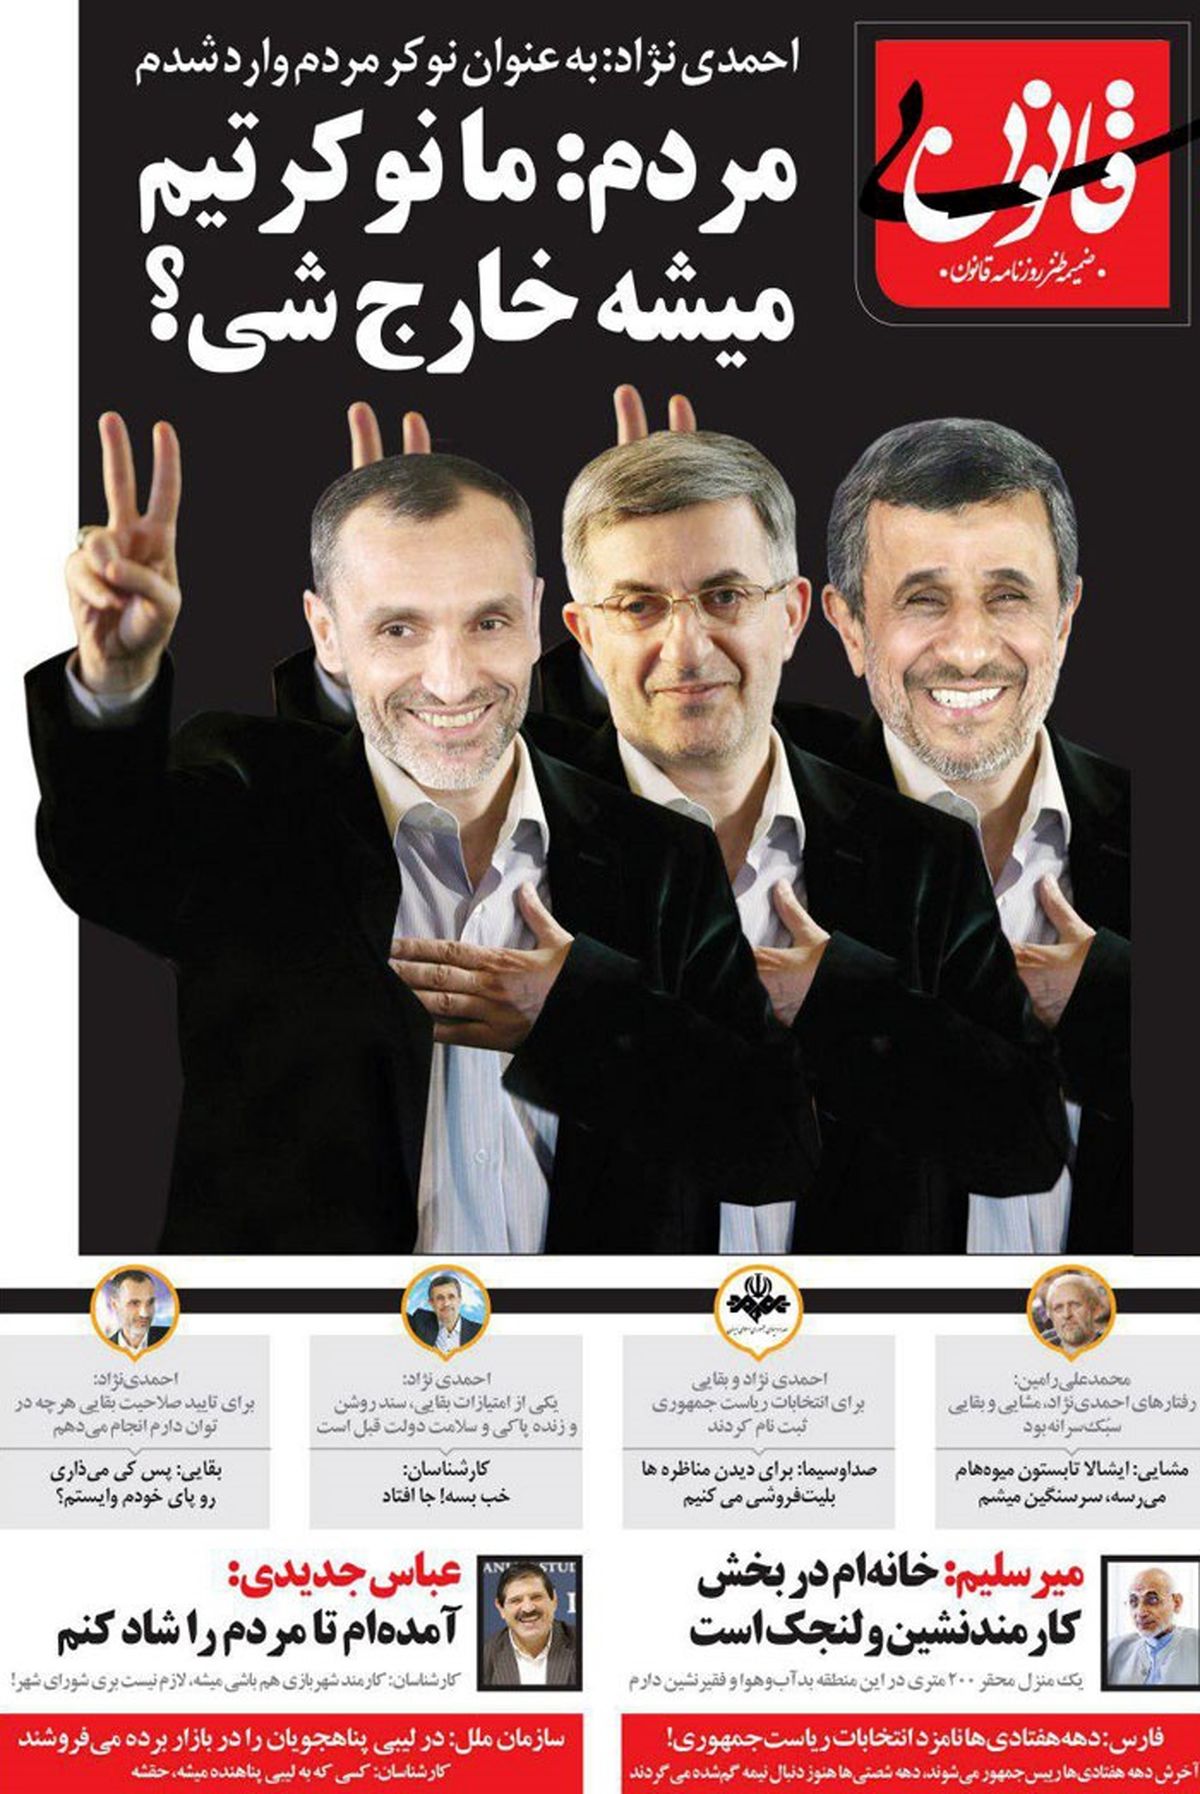 پیغام مهم مردم به احمدی نژاد منتشرشد! (کاریکاتور)